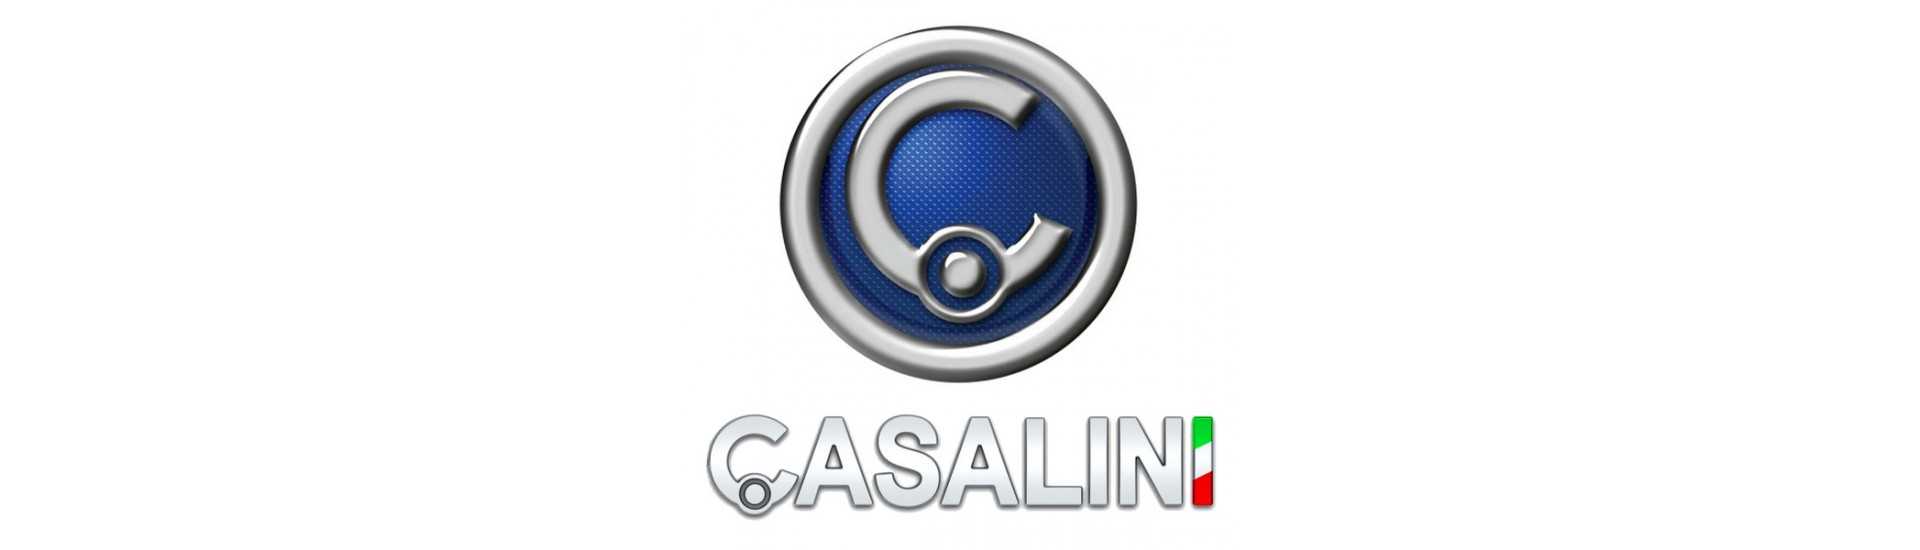 Cardan zum besten Preis für Auto ohne Lizenz Casalini